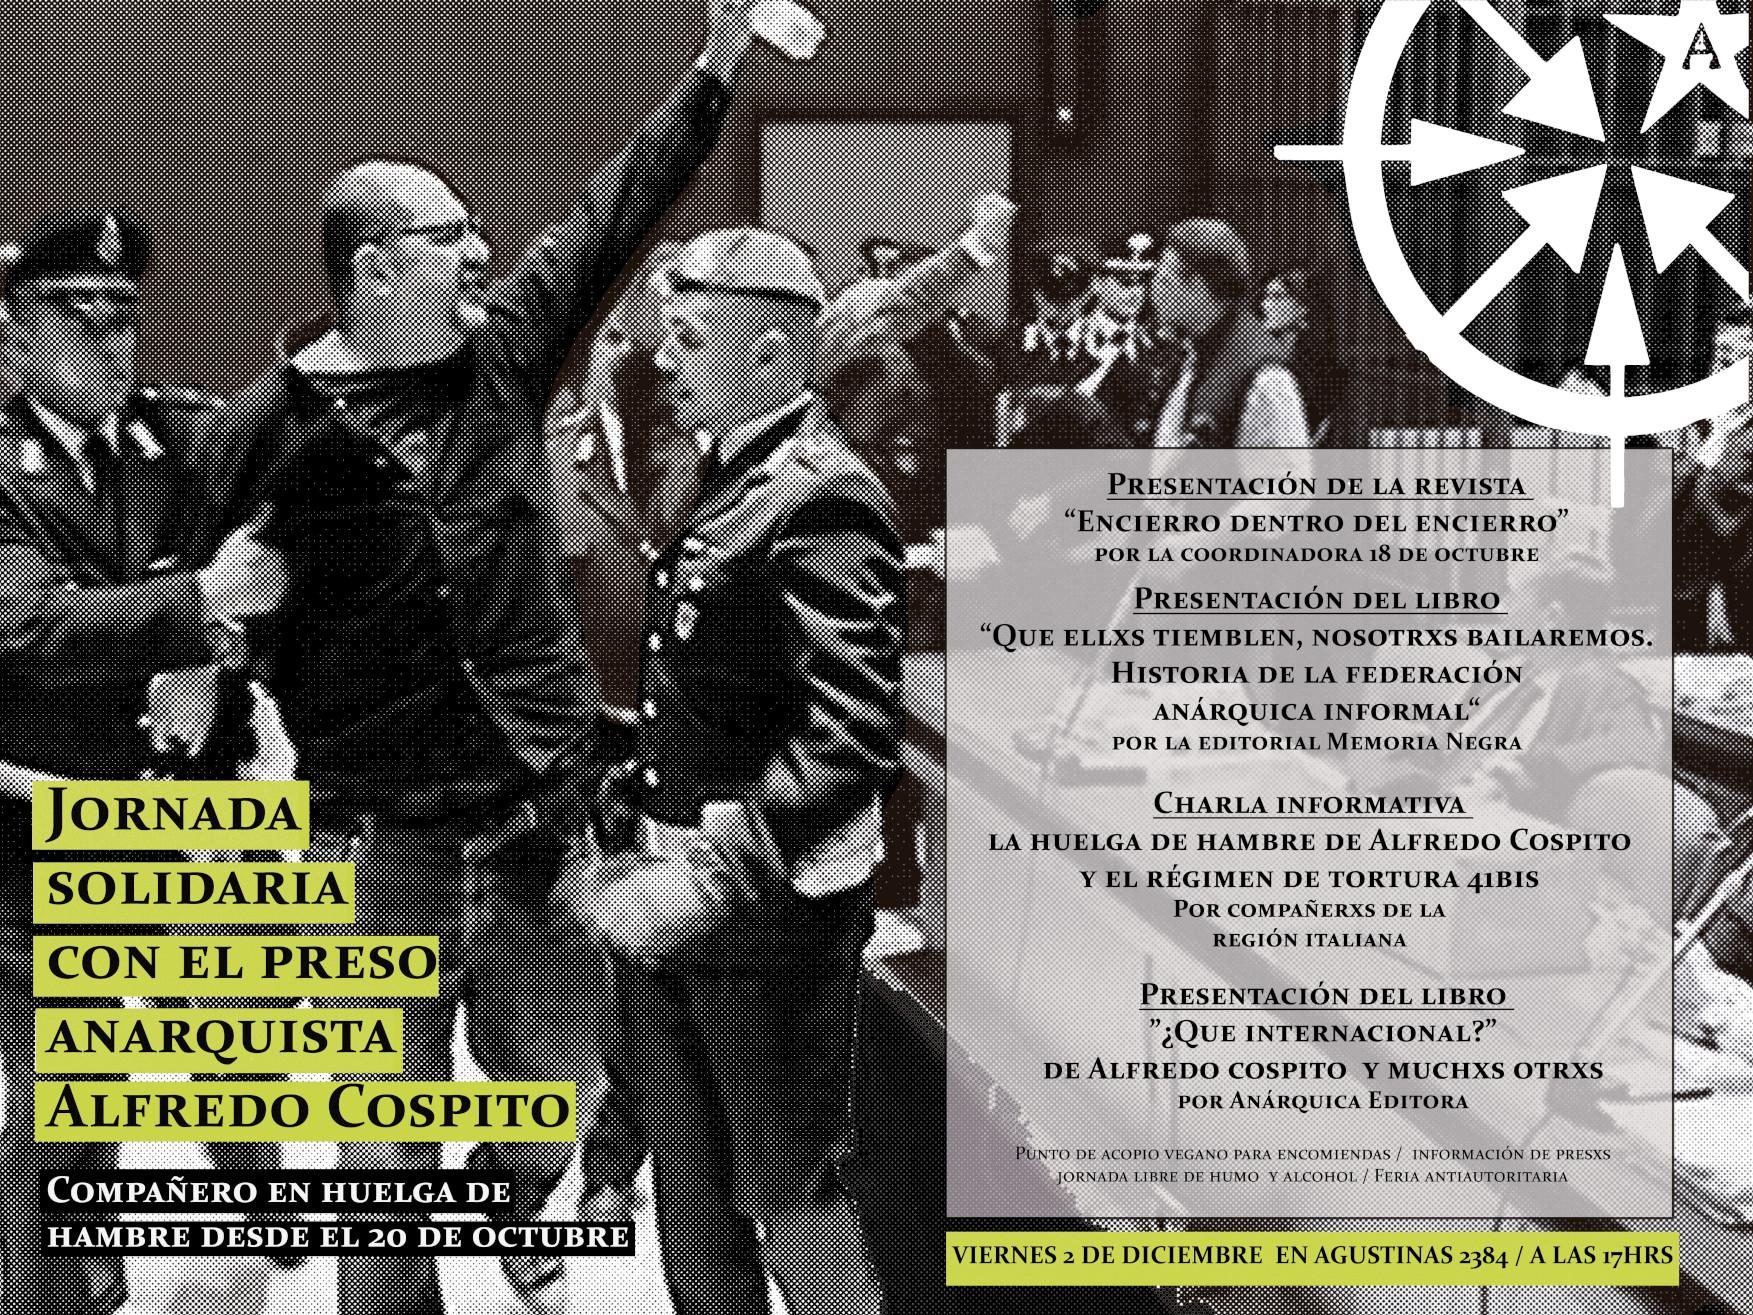 Chile: Jornada solidaria con el preso anarquista Alfredo Cospito. Compañero en huelga de hambre desde el 20 octubre.